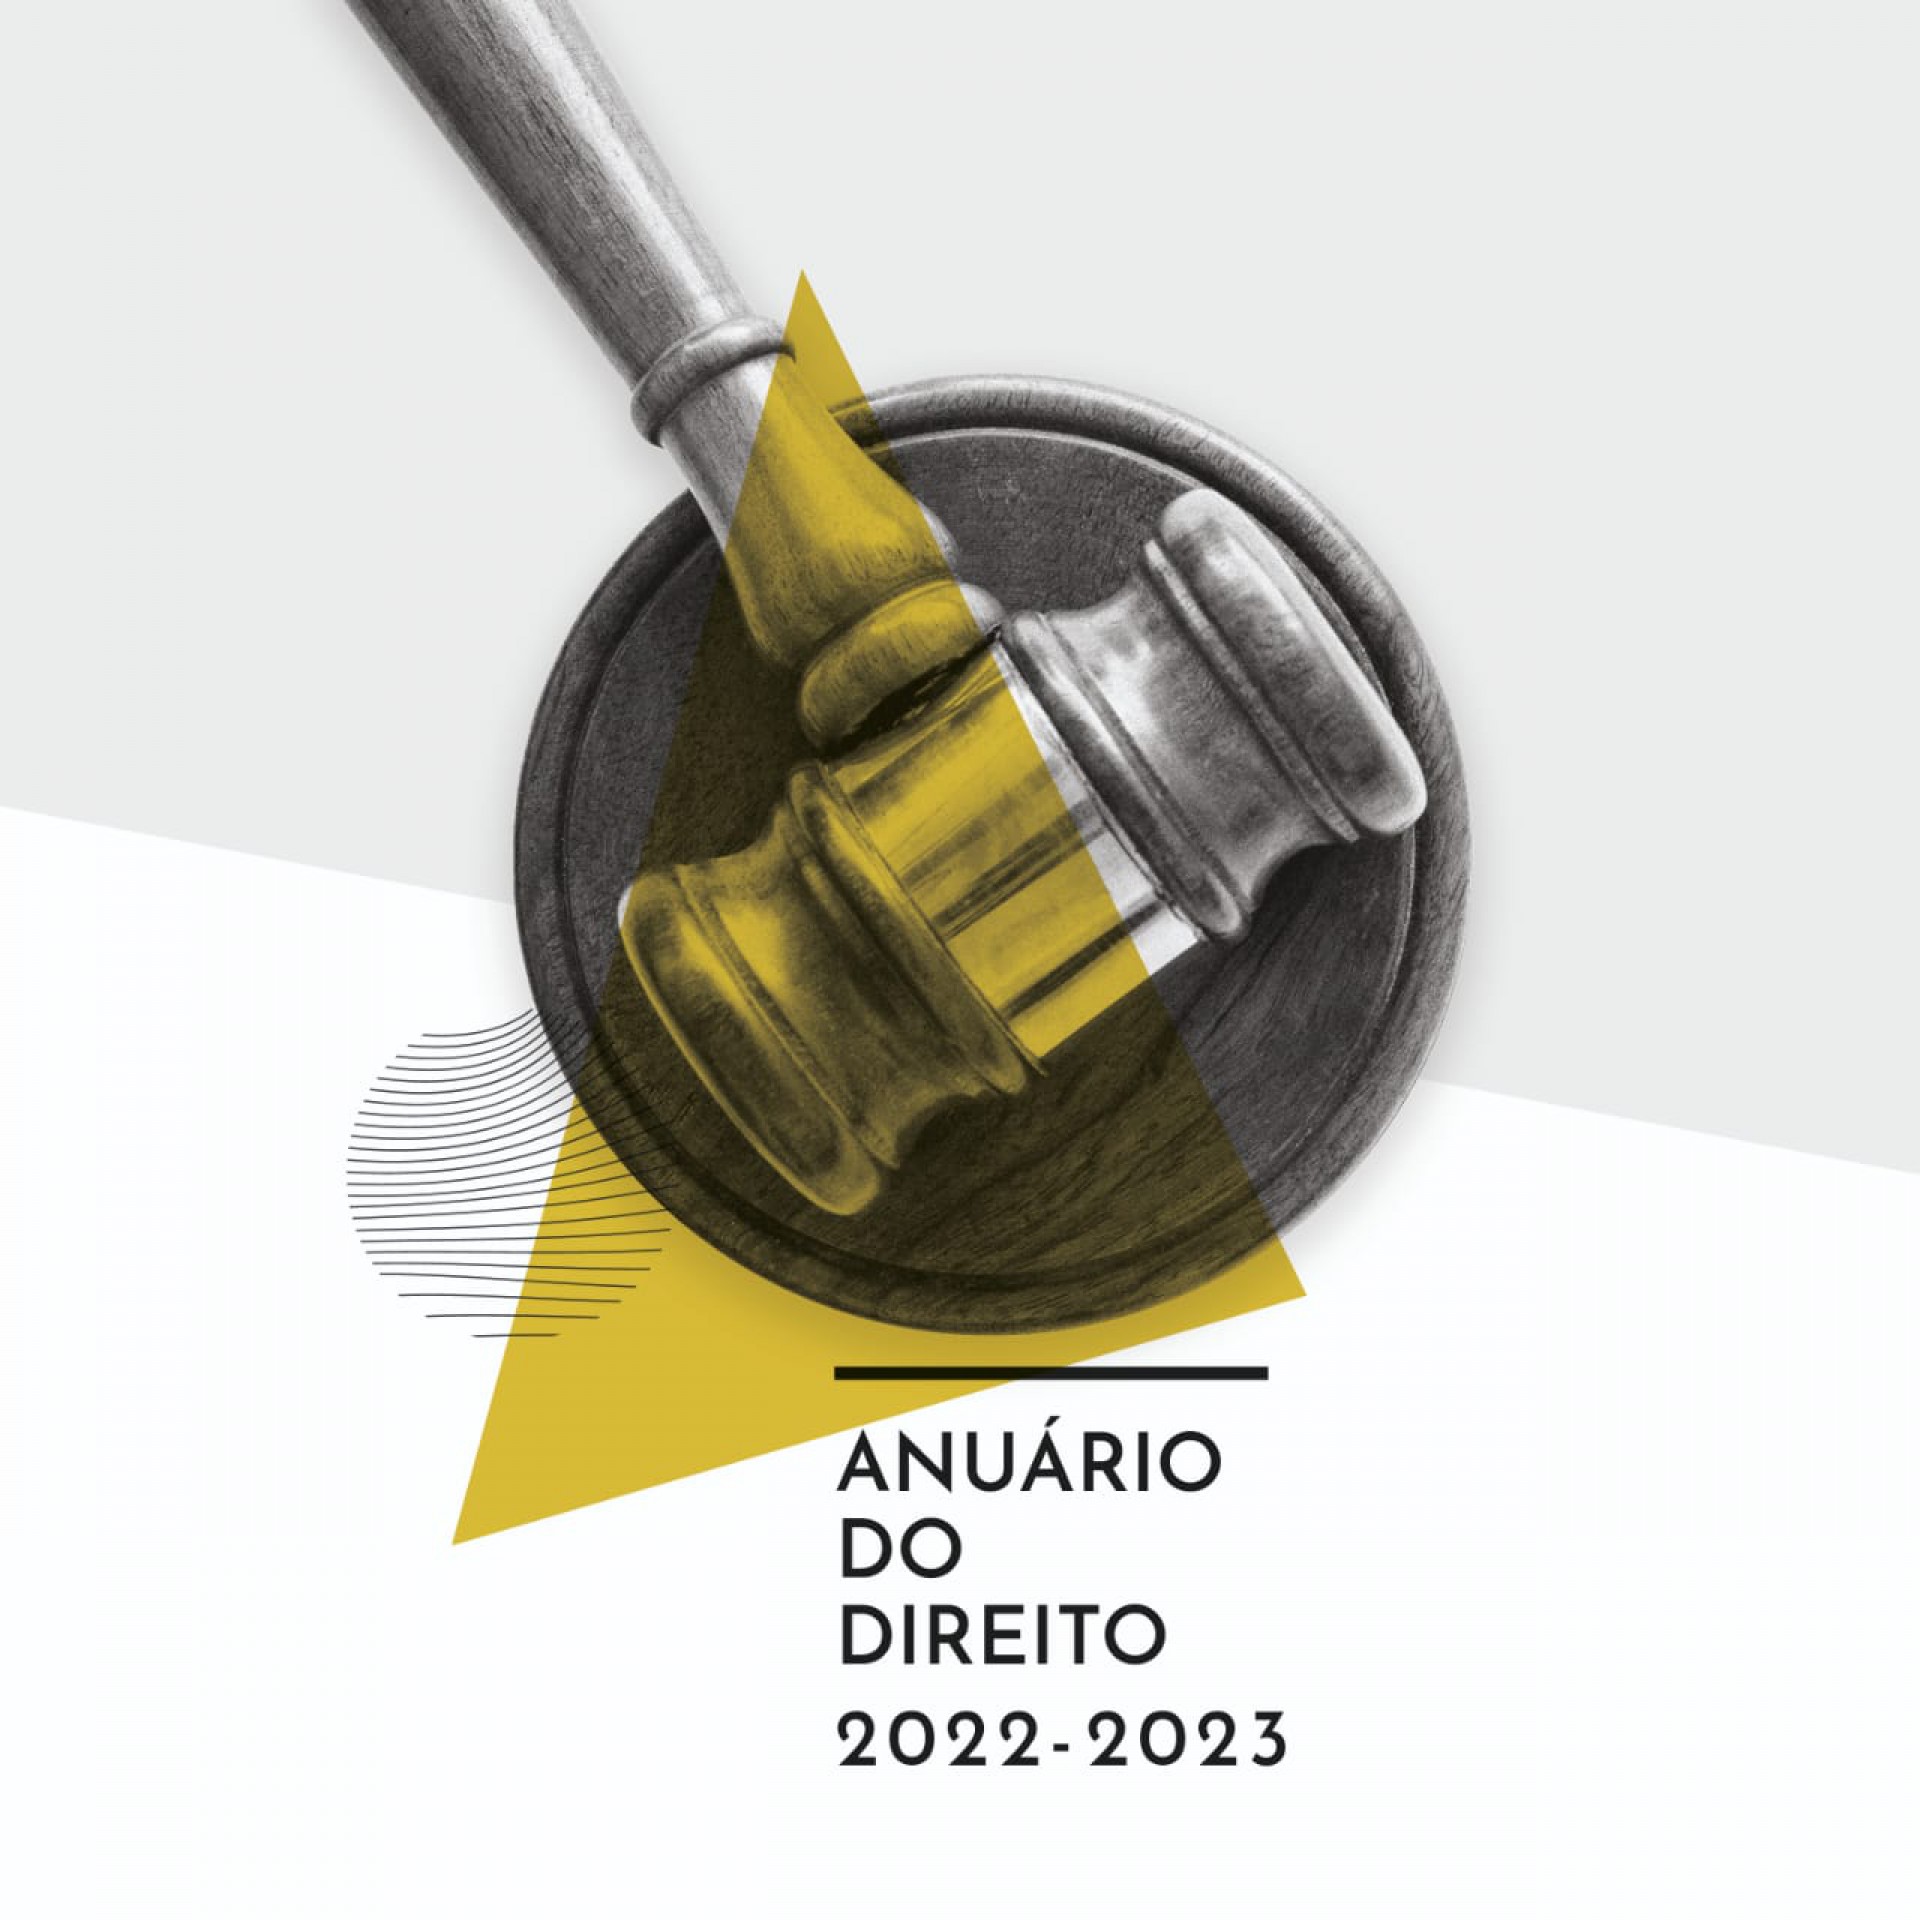 O Anuário do Direito 2022-2023 tem a coordenação de Wagner Mendes, do O Povo